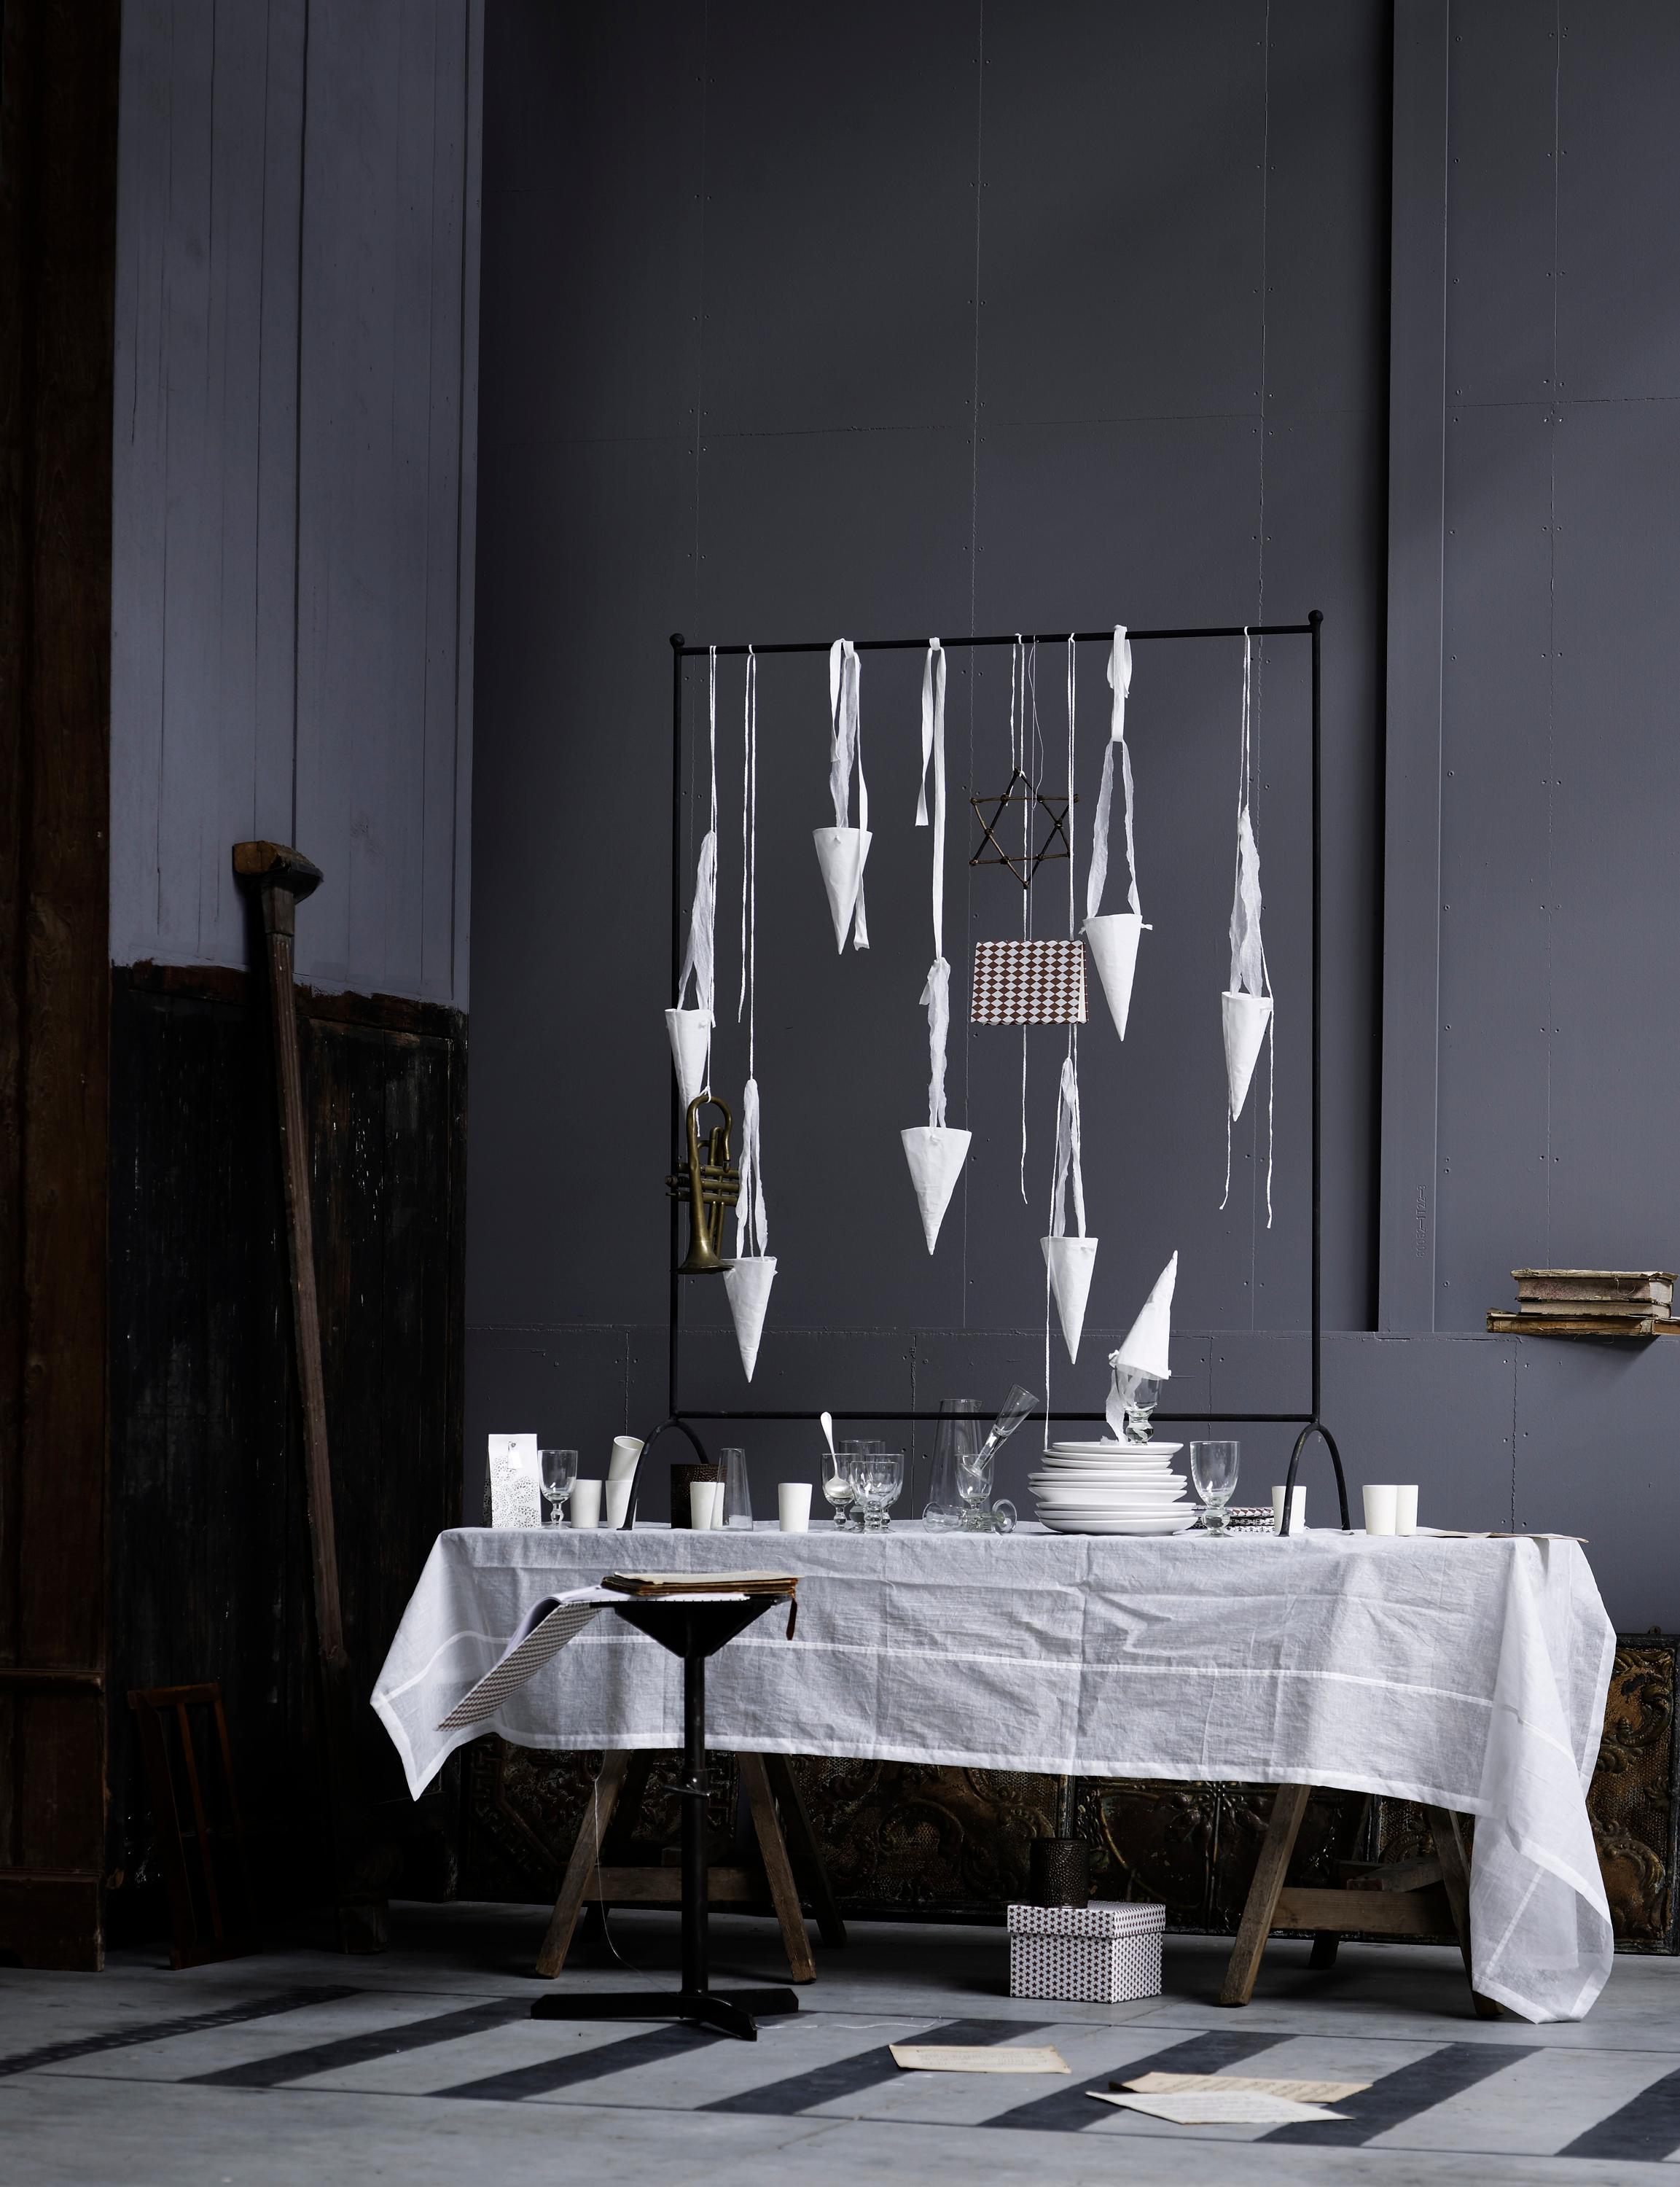 Dekoideen für die Festtafel #grauewandgestaltung #dekoidee ©Tine K Home